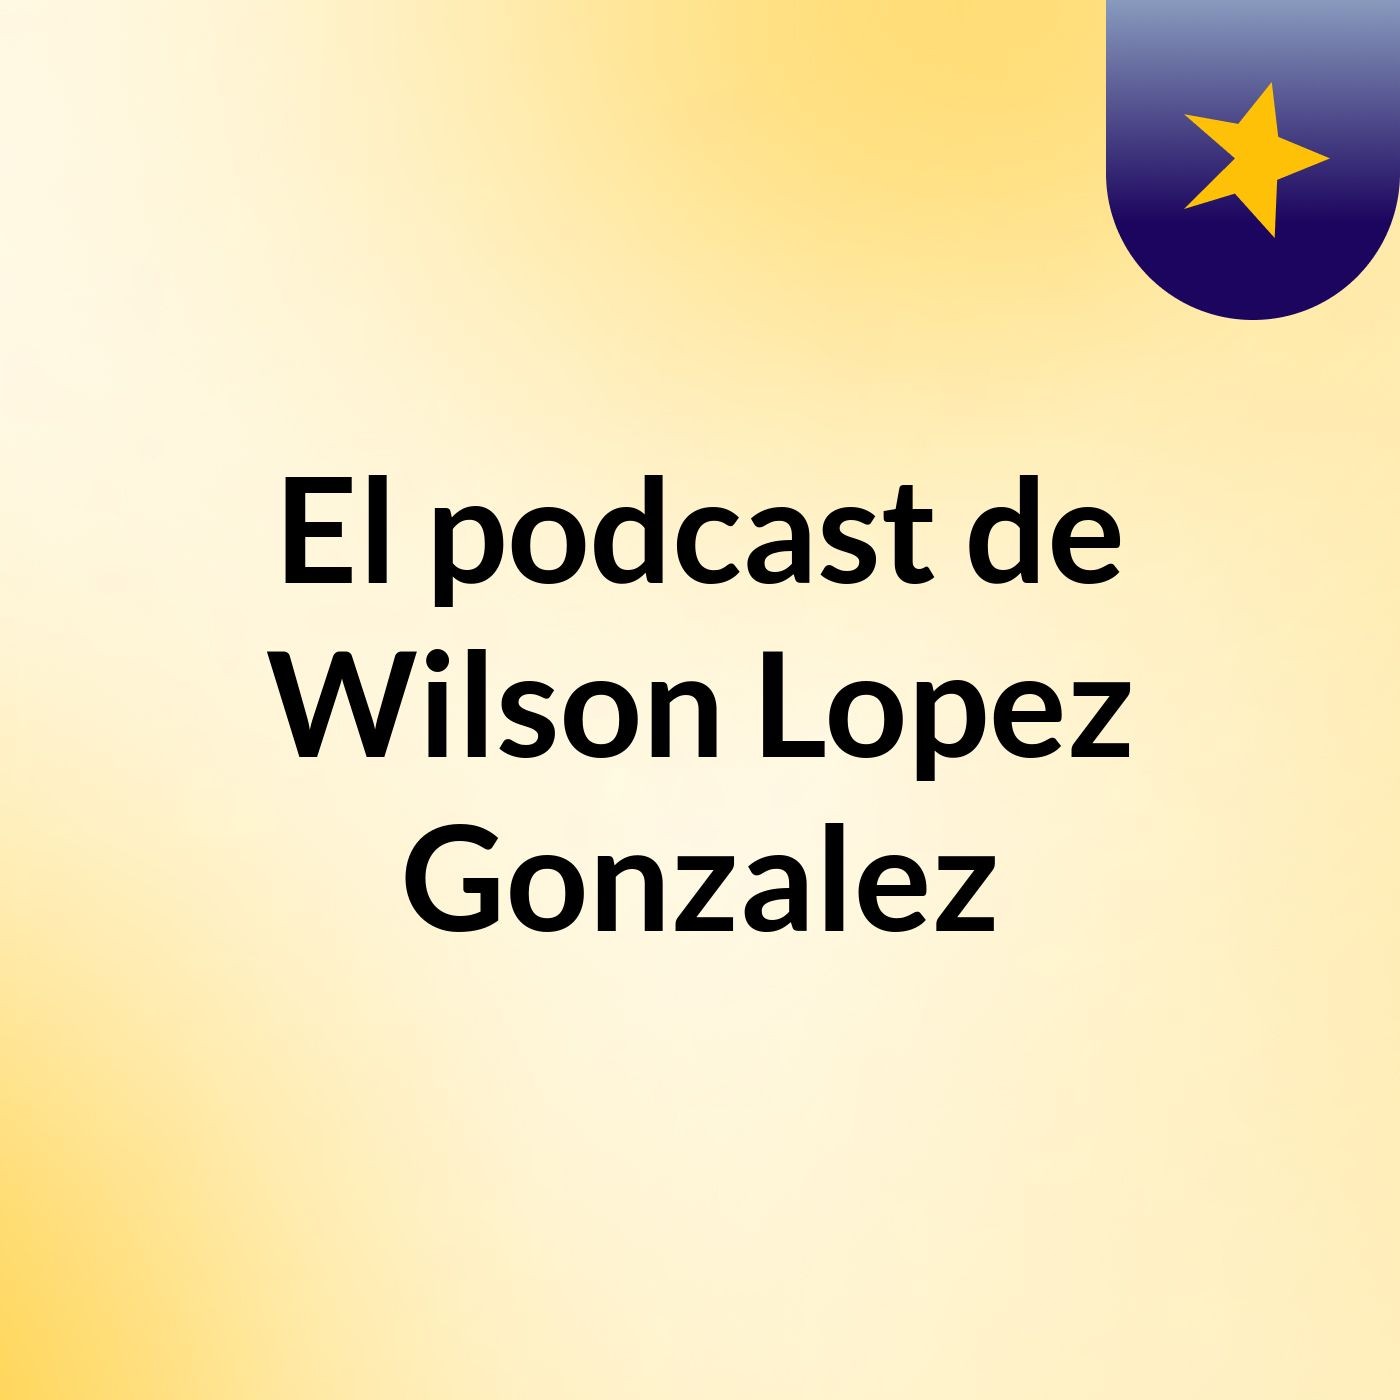 Episodio 3 - El podcast de Wilson Lopez Gonzalez